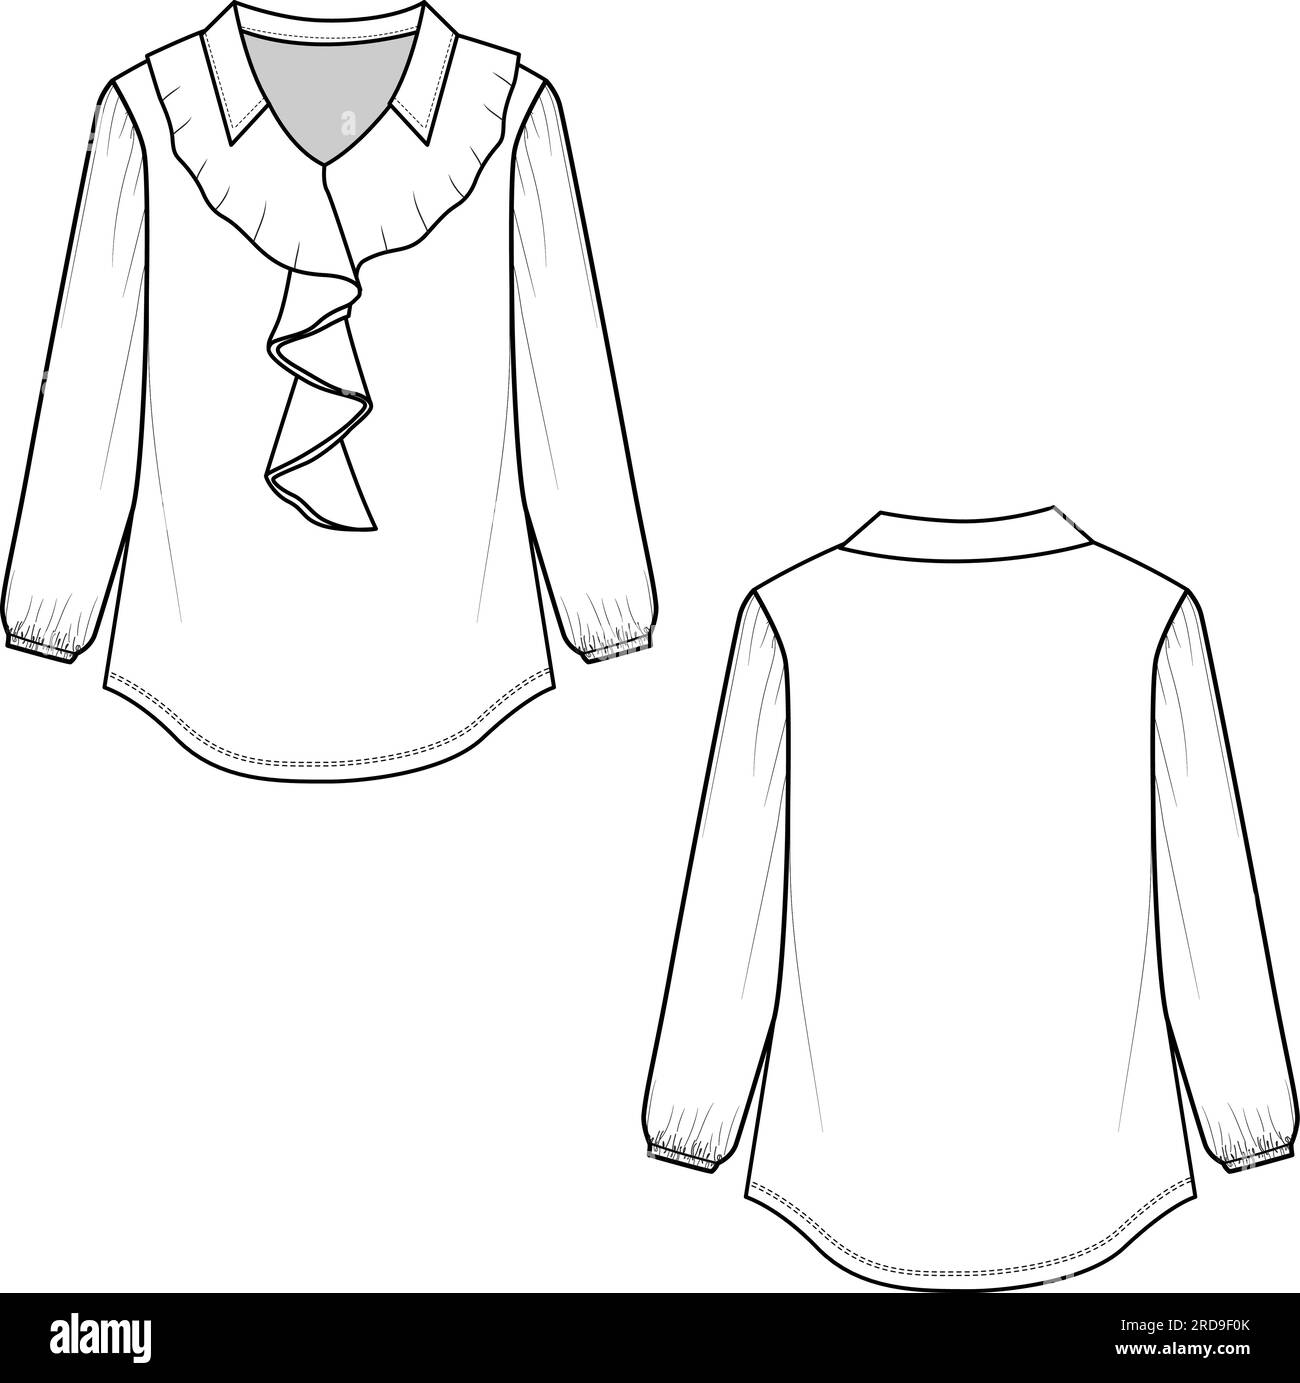 Frauen Kragen mit schickem Ausschnitt Rüschen Langarm T-Shirt Oberteil Bluse Mode Flat Sketch Zeichnung Design Vektor Stock Vektor